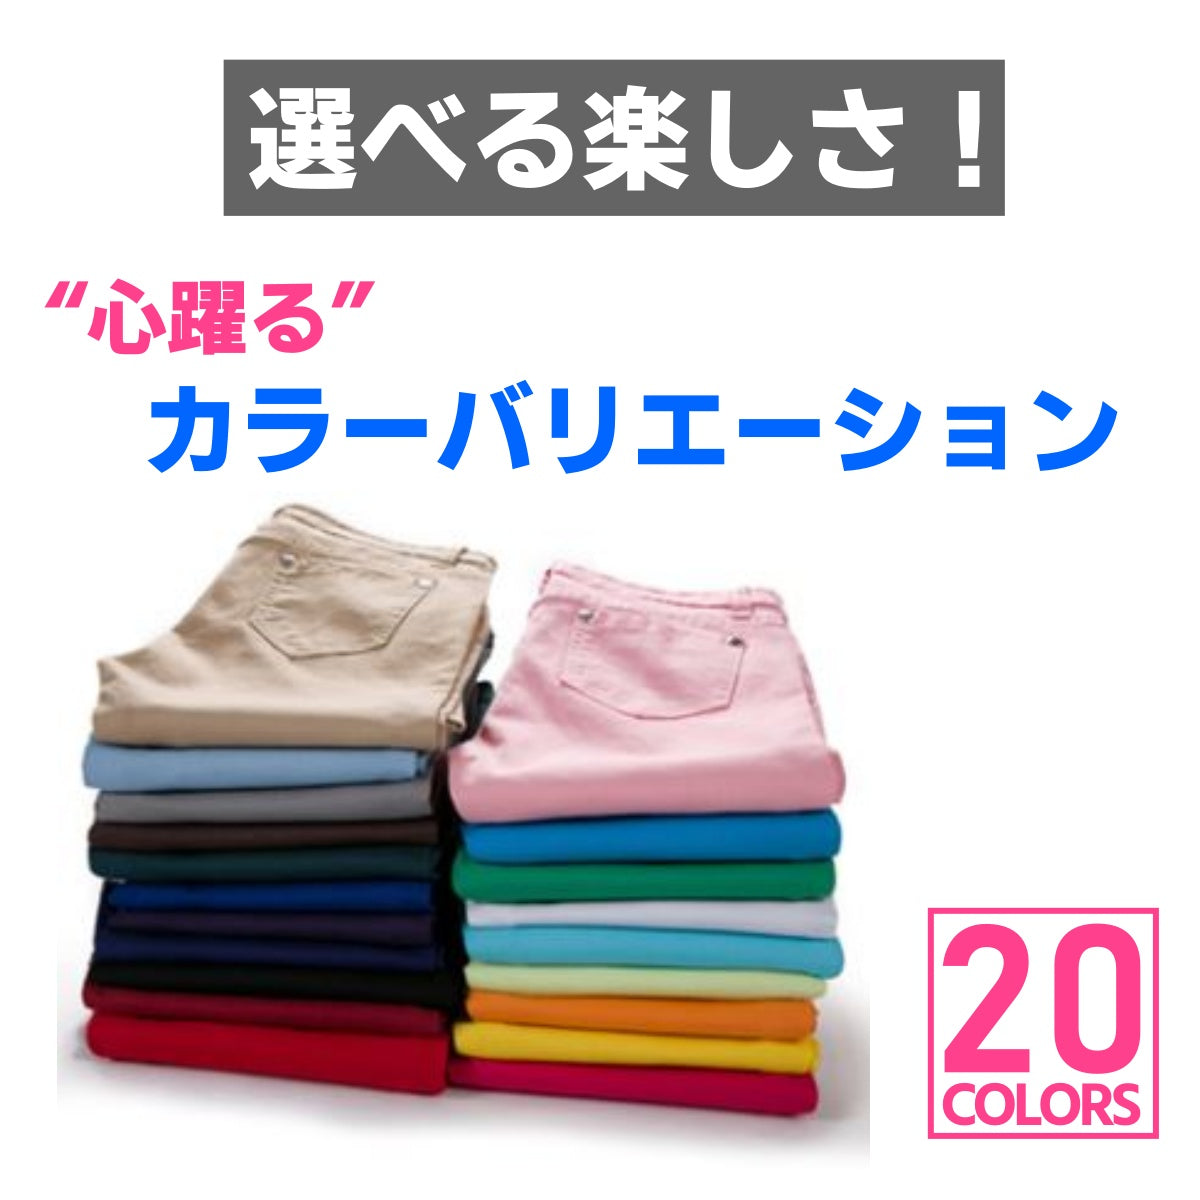 Pants/ 20カラーストレッチスキニーパンツ ST/No.27097